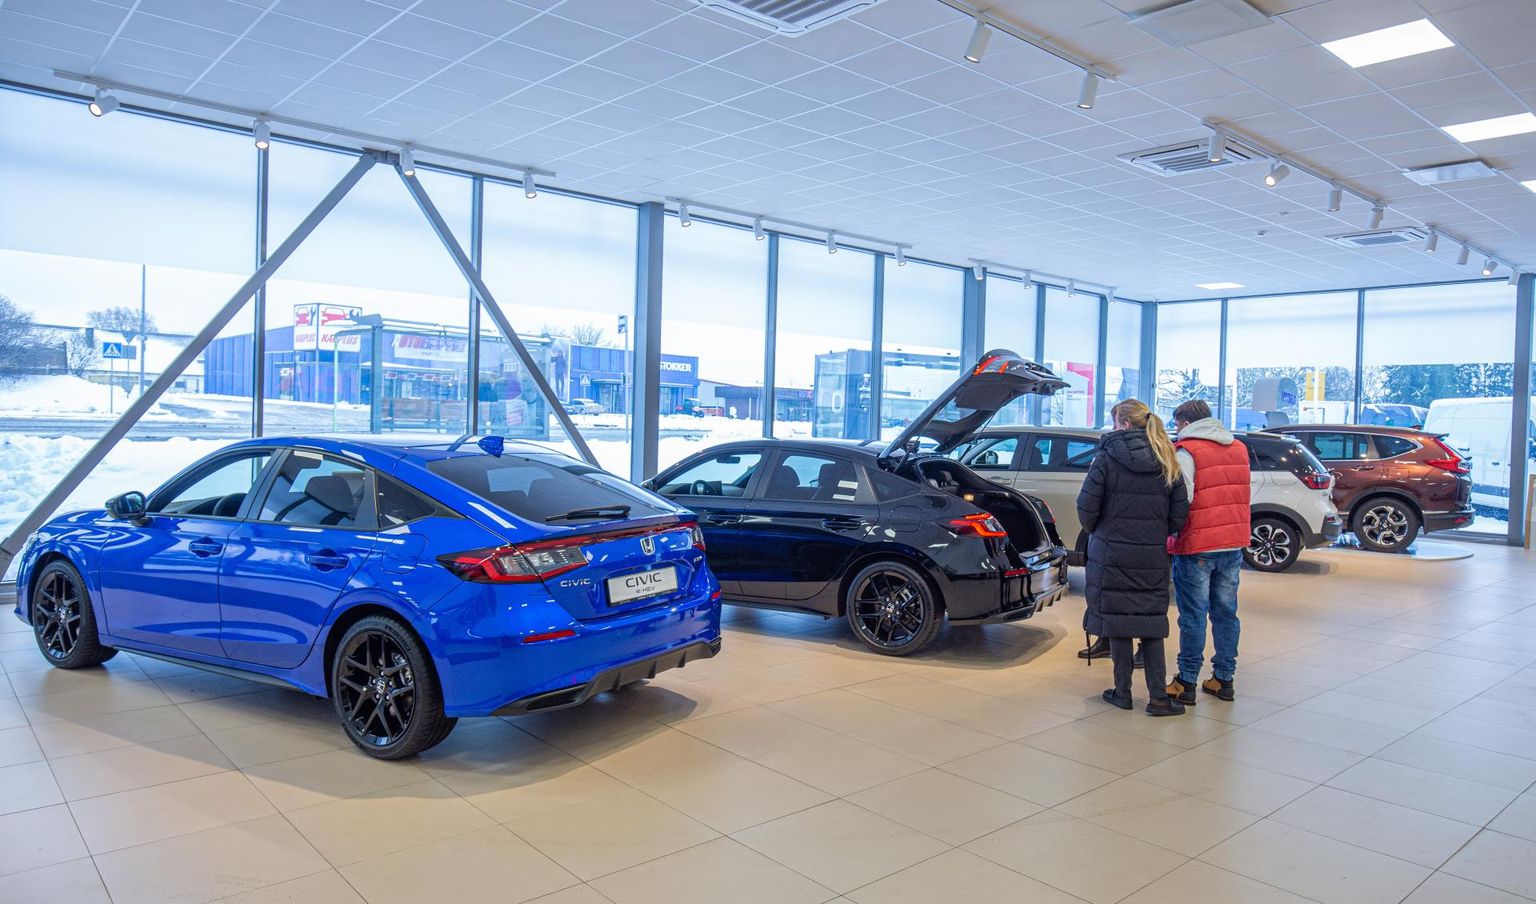 В прошлом году три автосалона в Вильянди увеличили свои продажи, и одним из них стал LX Motors, куда поступили долгожданные новые модели.